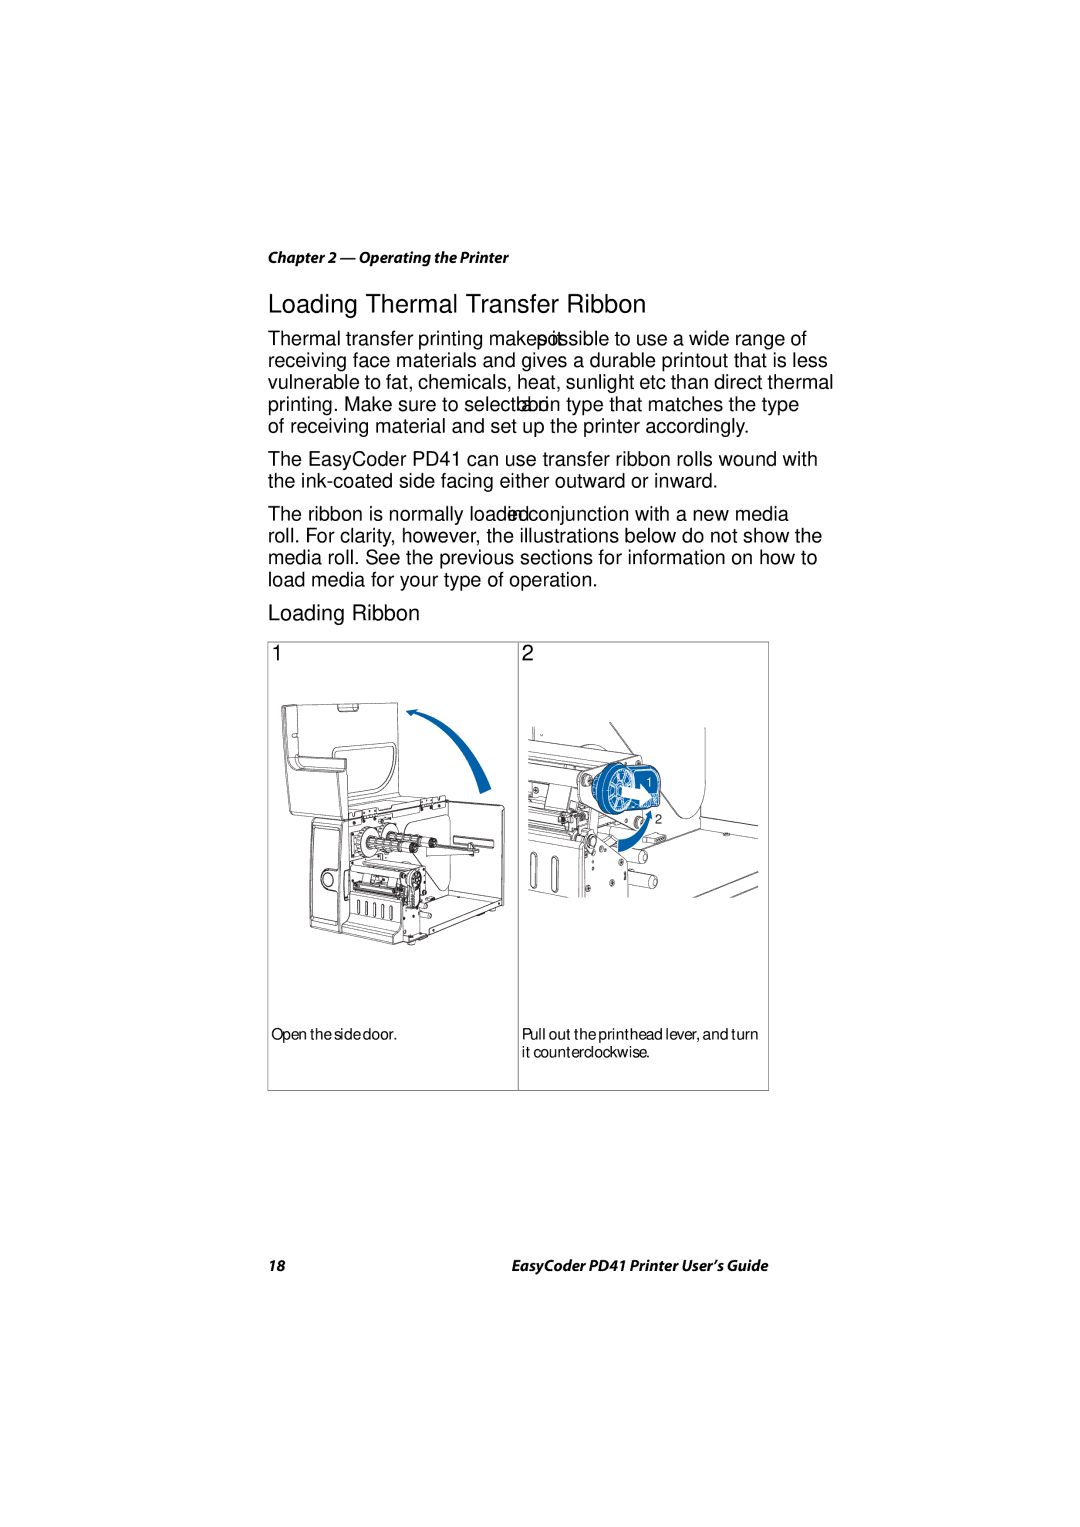 Intermec PD41 manual Loading Thermal Transfer Ribbon, Loading Ribbon 